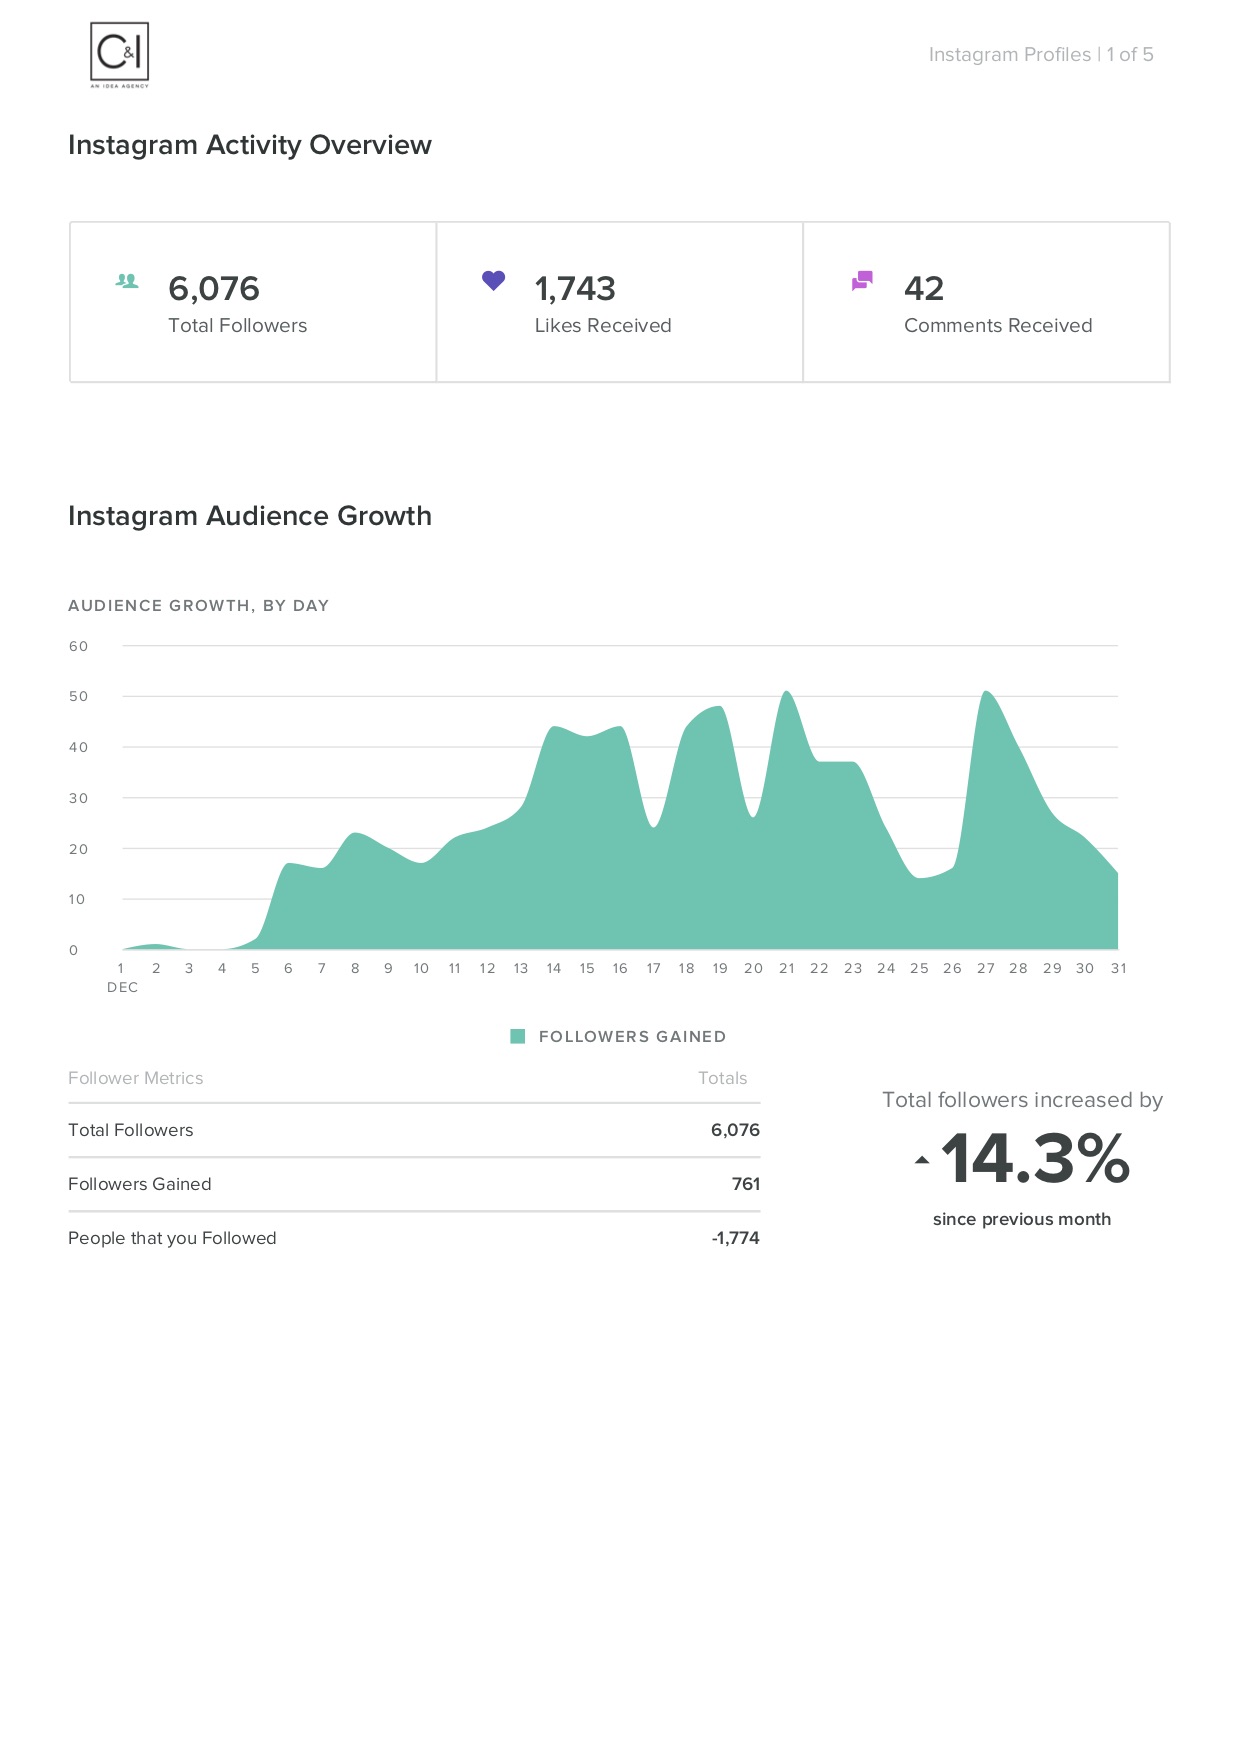 DECEMBER Instagram Activity Overview Profiles (Handy) Dec 2017